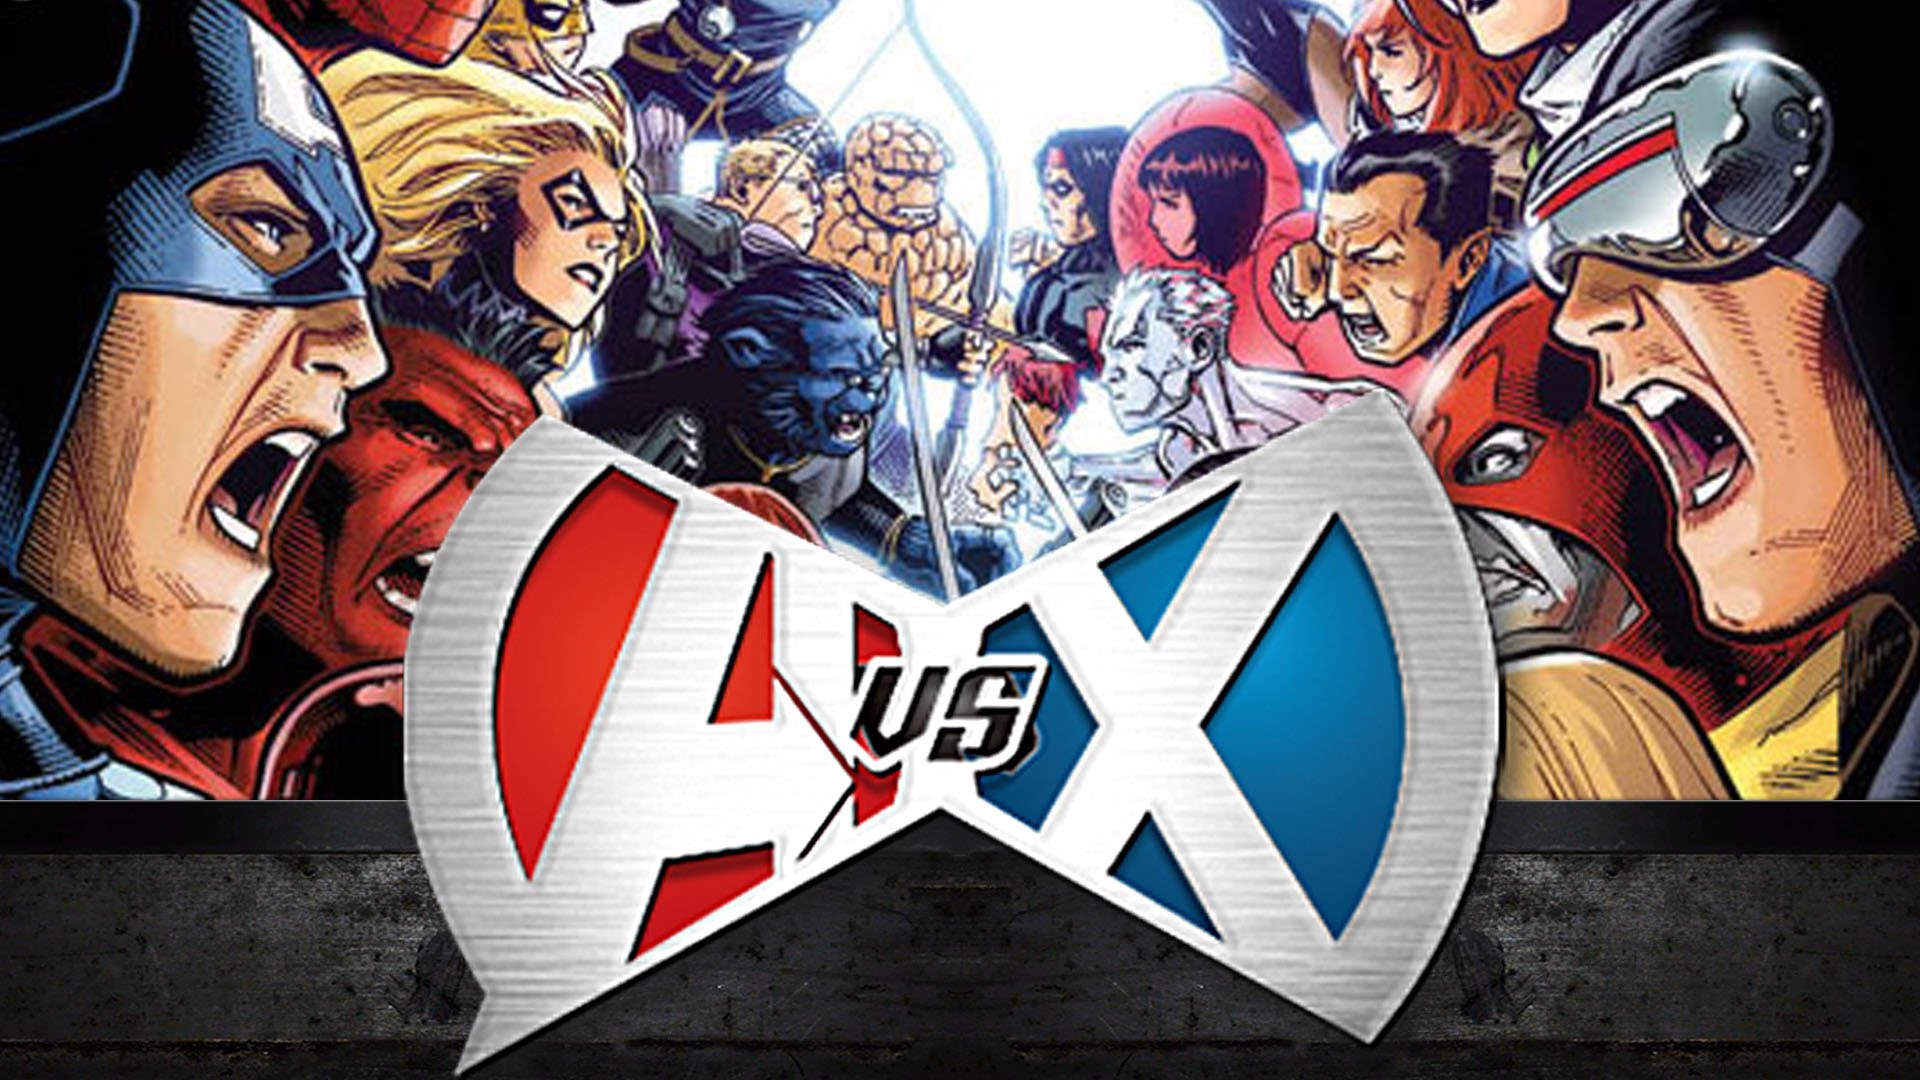 Avengers Vs X Men